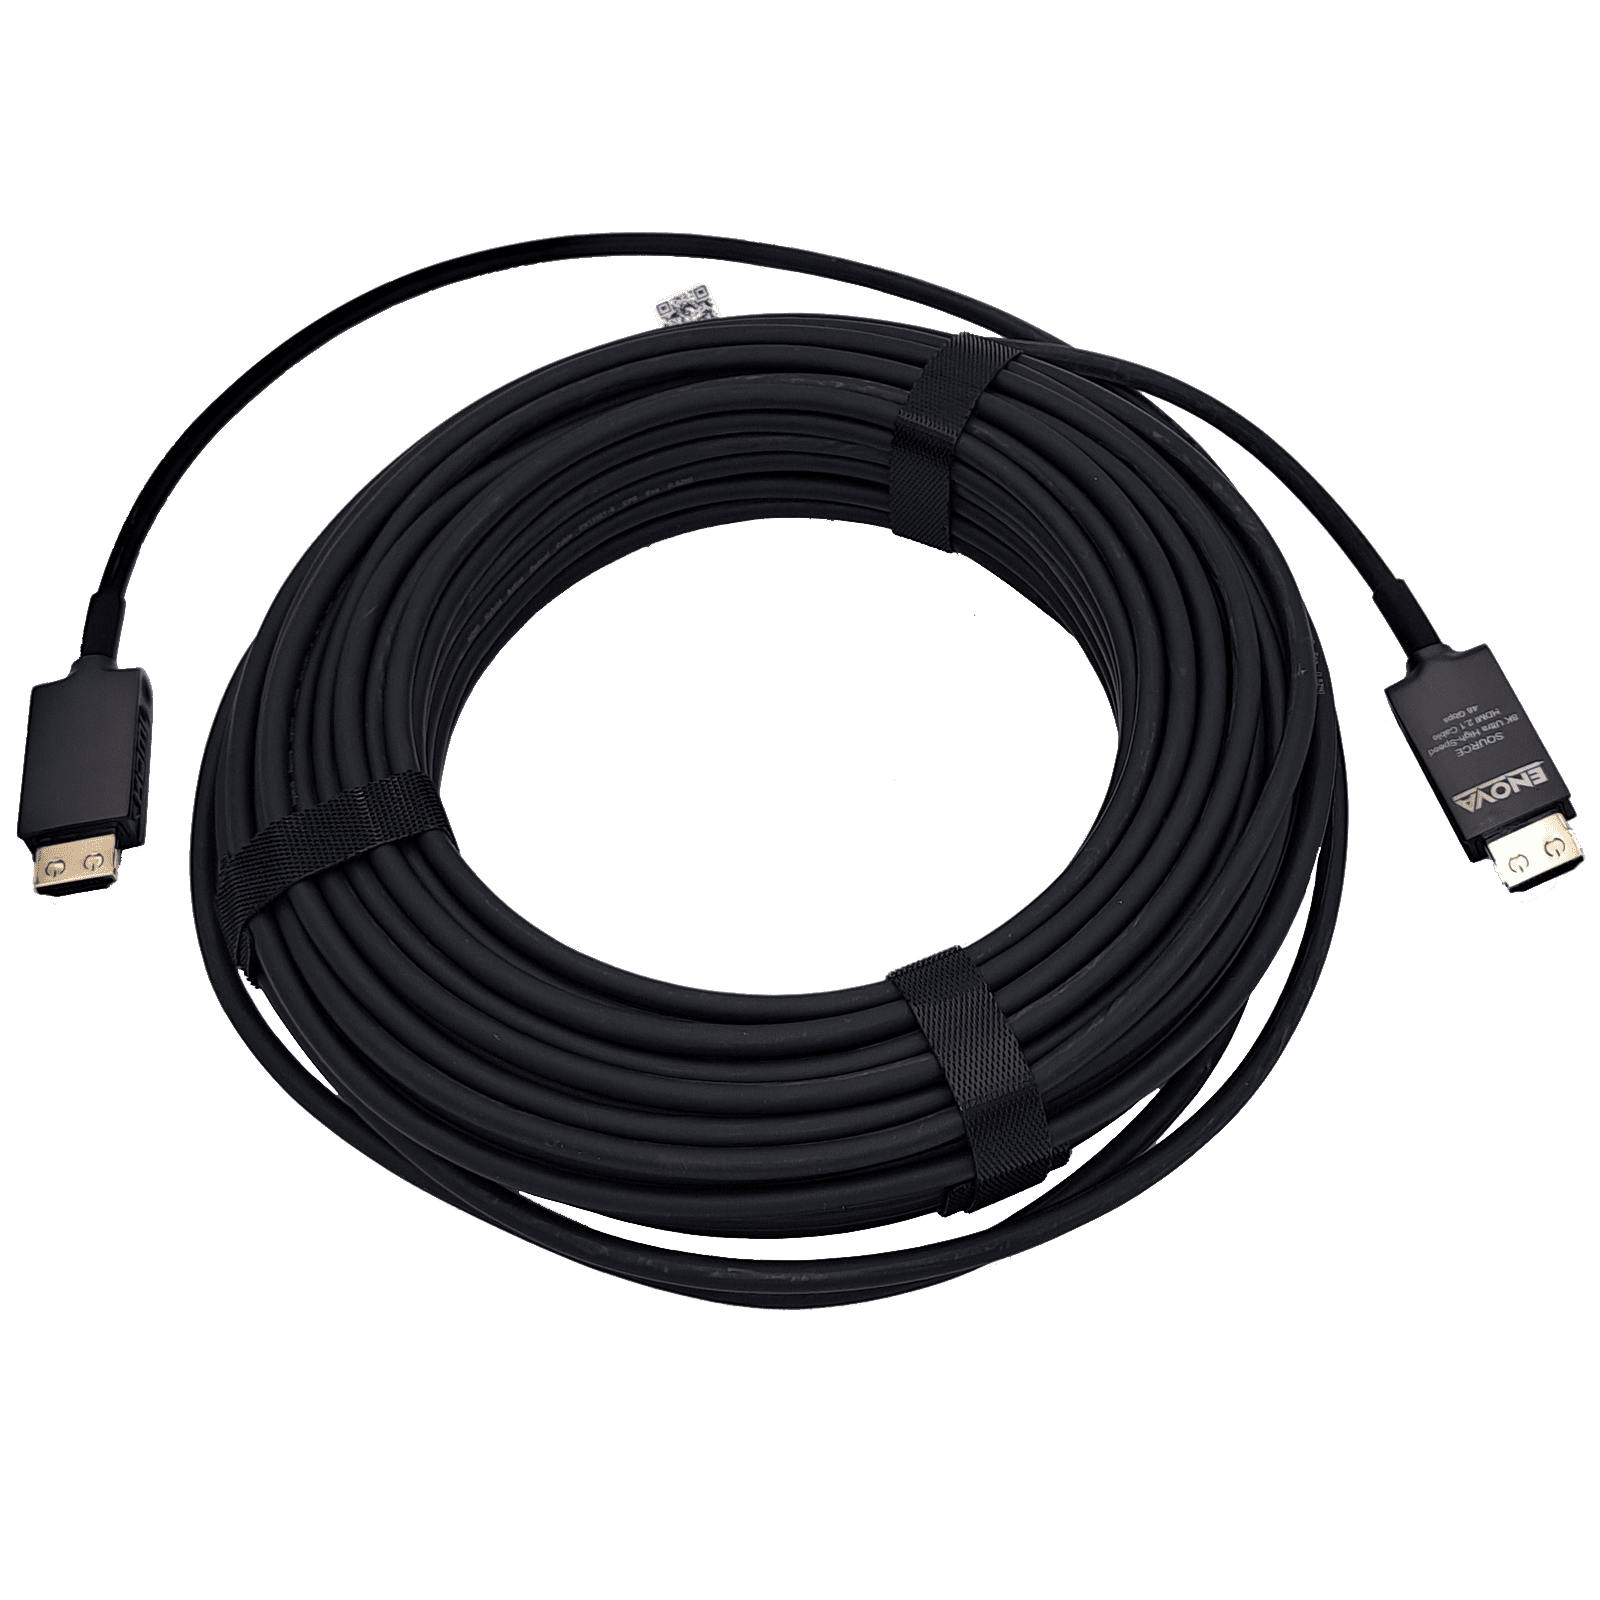 ENOVA, 10 meter HDMI Cable 2.1 8K, Active Fiber Optic Cable